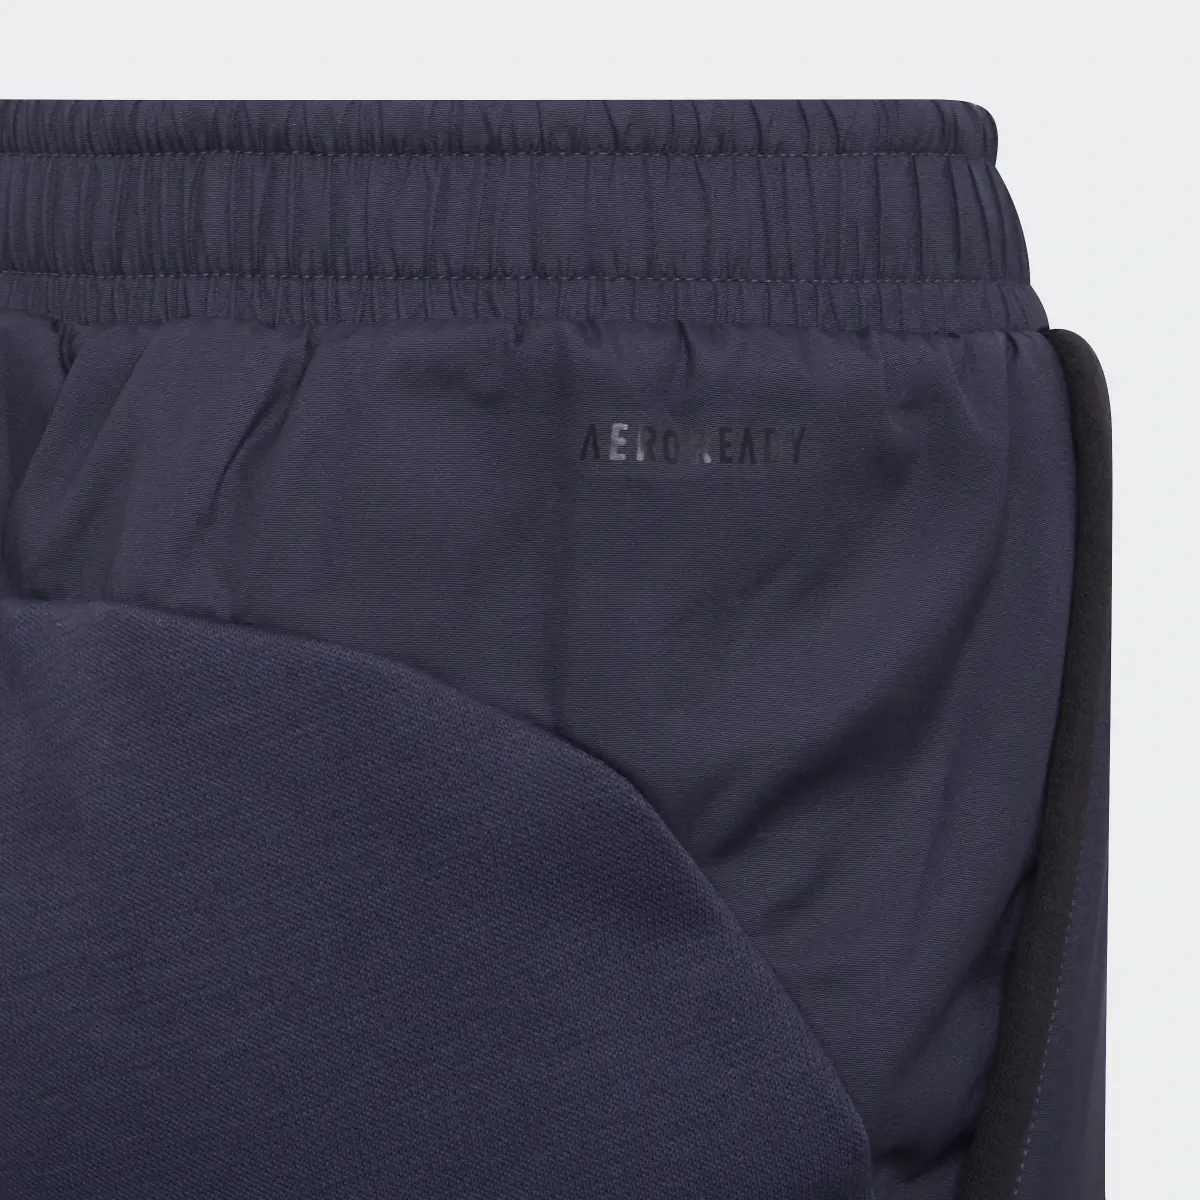 Adidas Pantaloni Designed for Gameday. 3